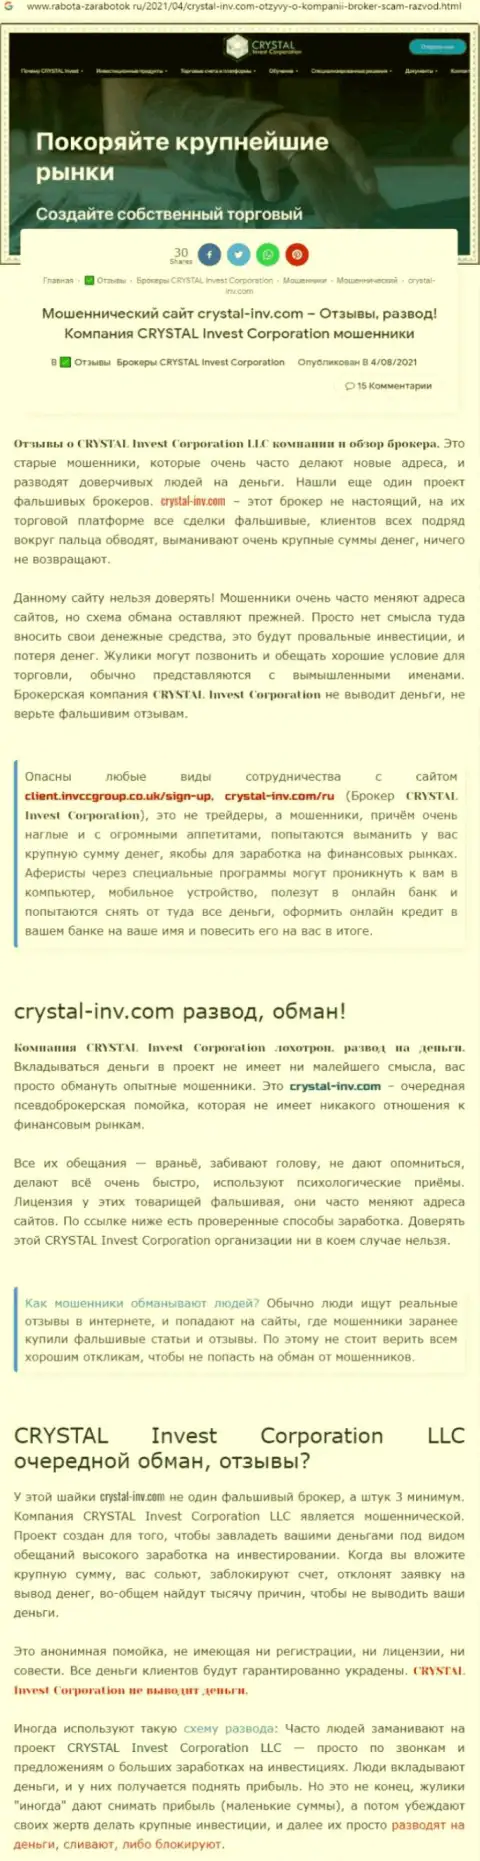 Материал, разоблачающий организацию Crystal Inv, который взят с сайта с обзорами неправомерных действий разных контор